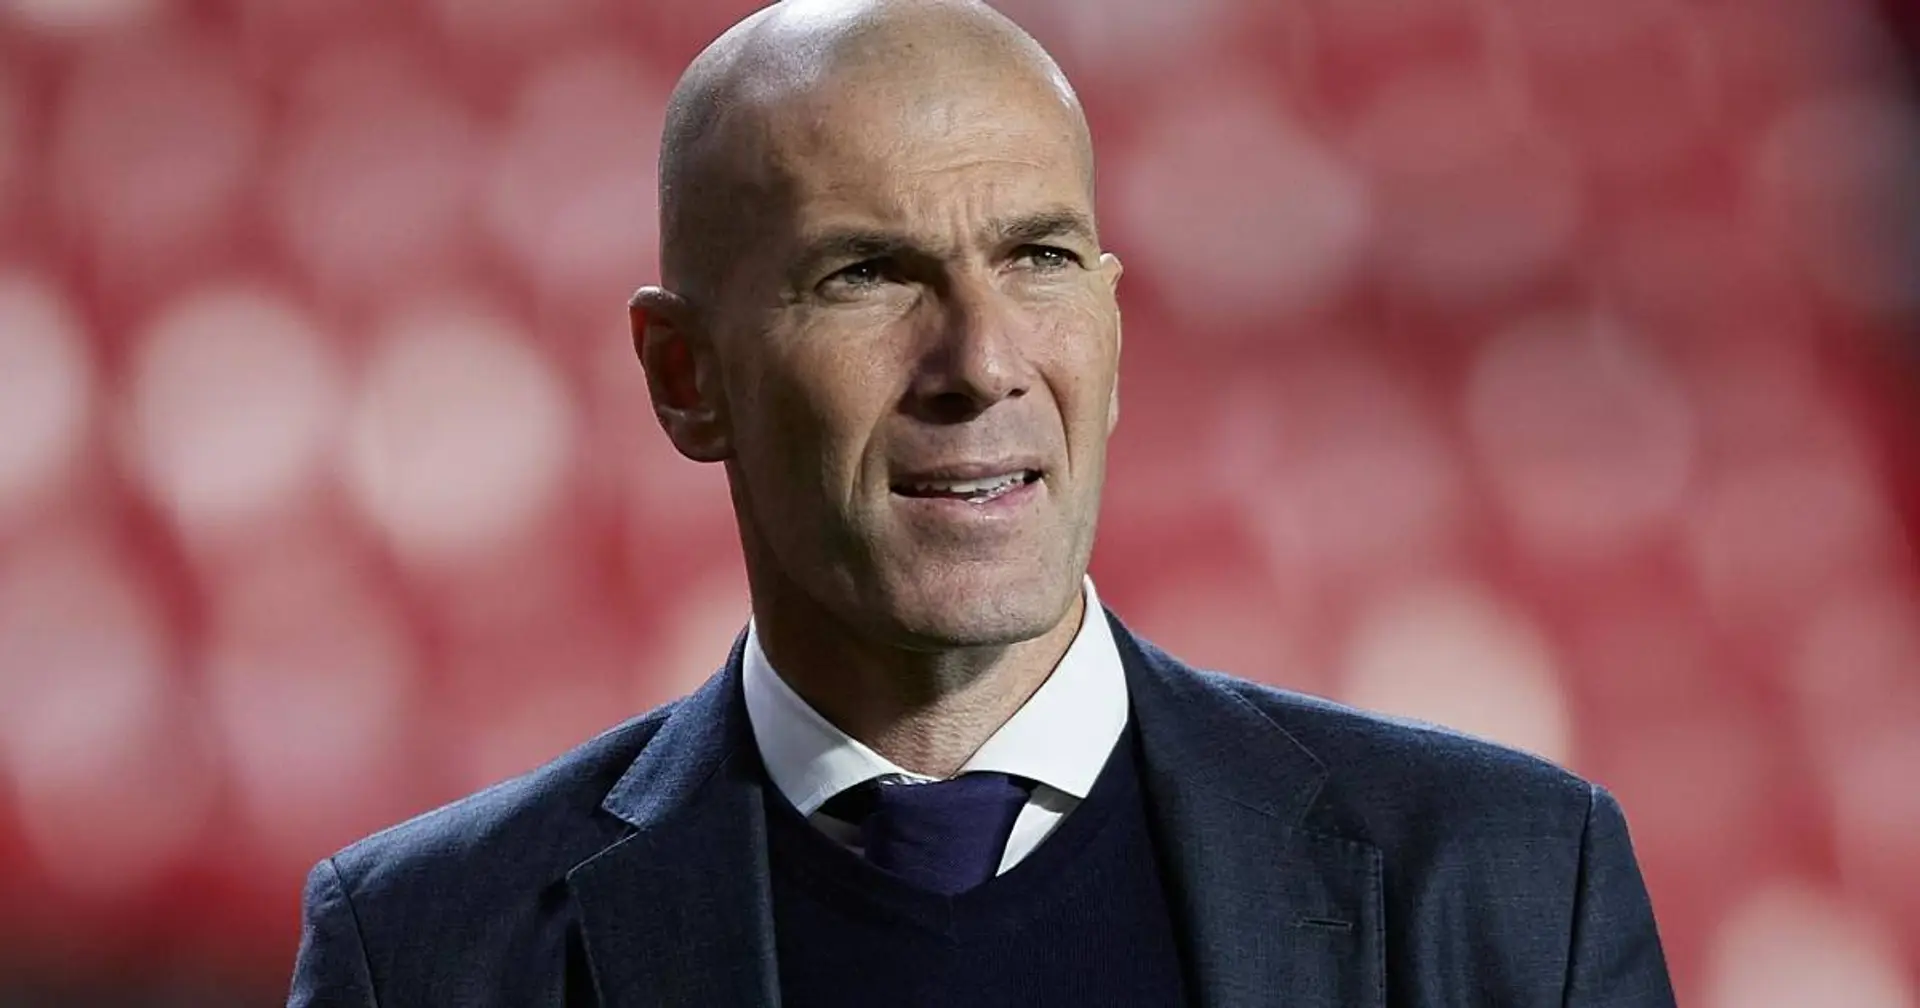 Gerüchte um bevorstehendes Zidane-Engagement bei Bayern stimmen nicht - deutsche Medien